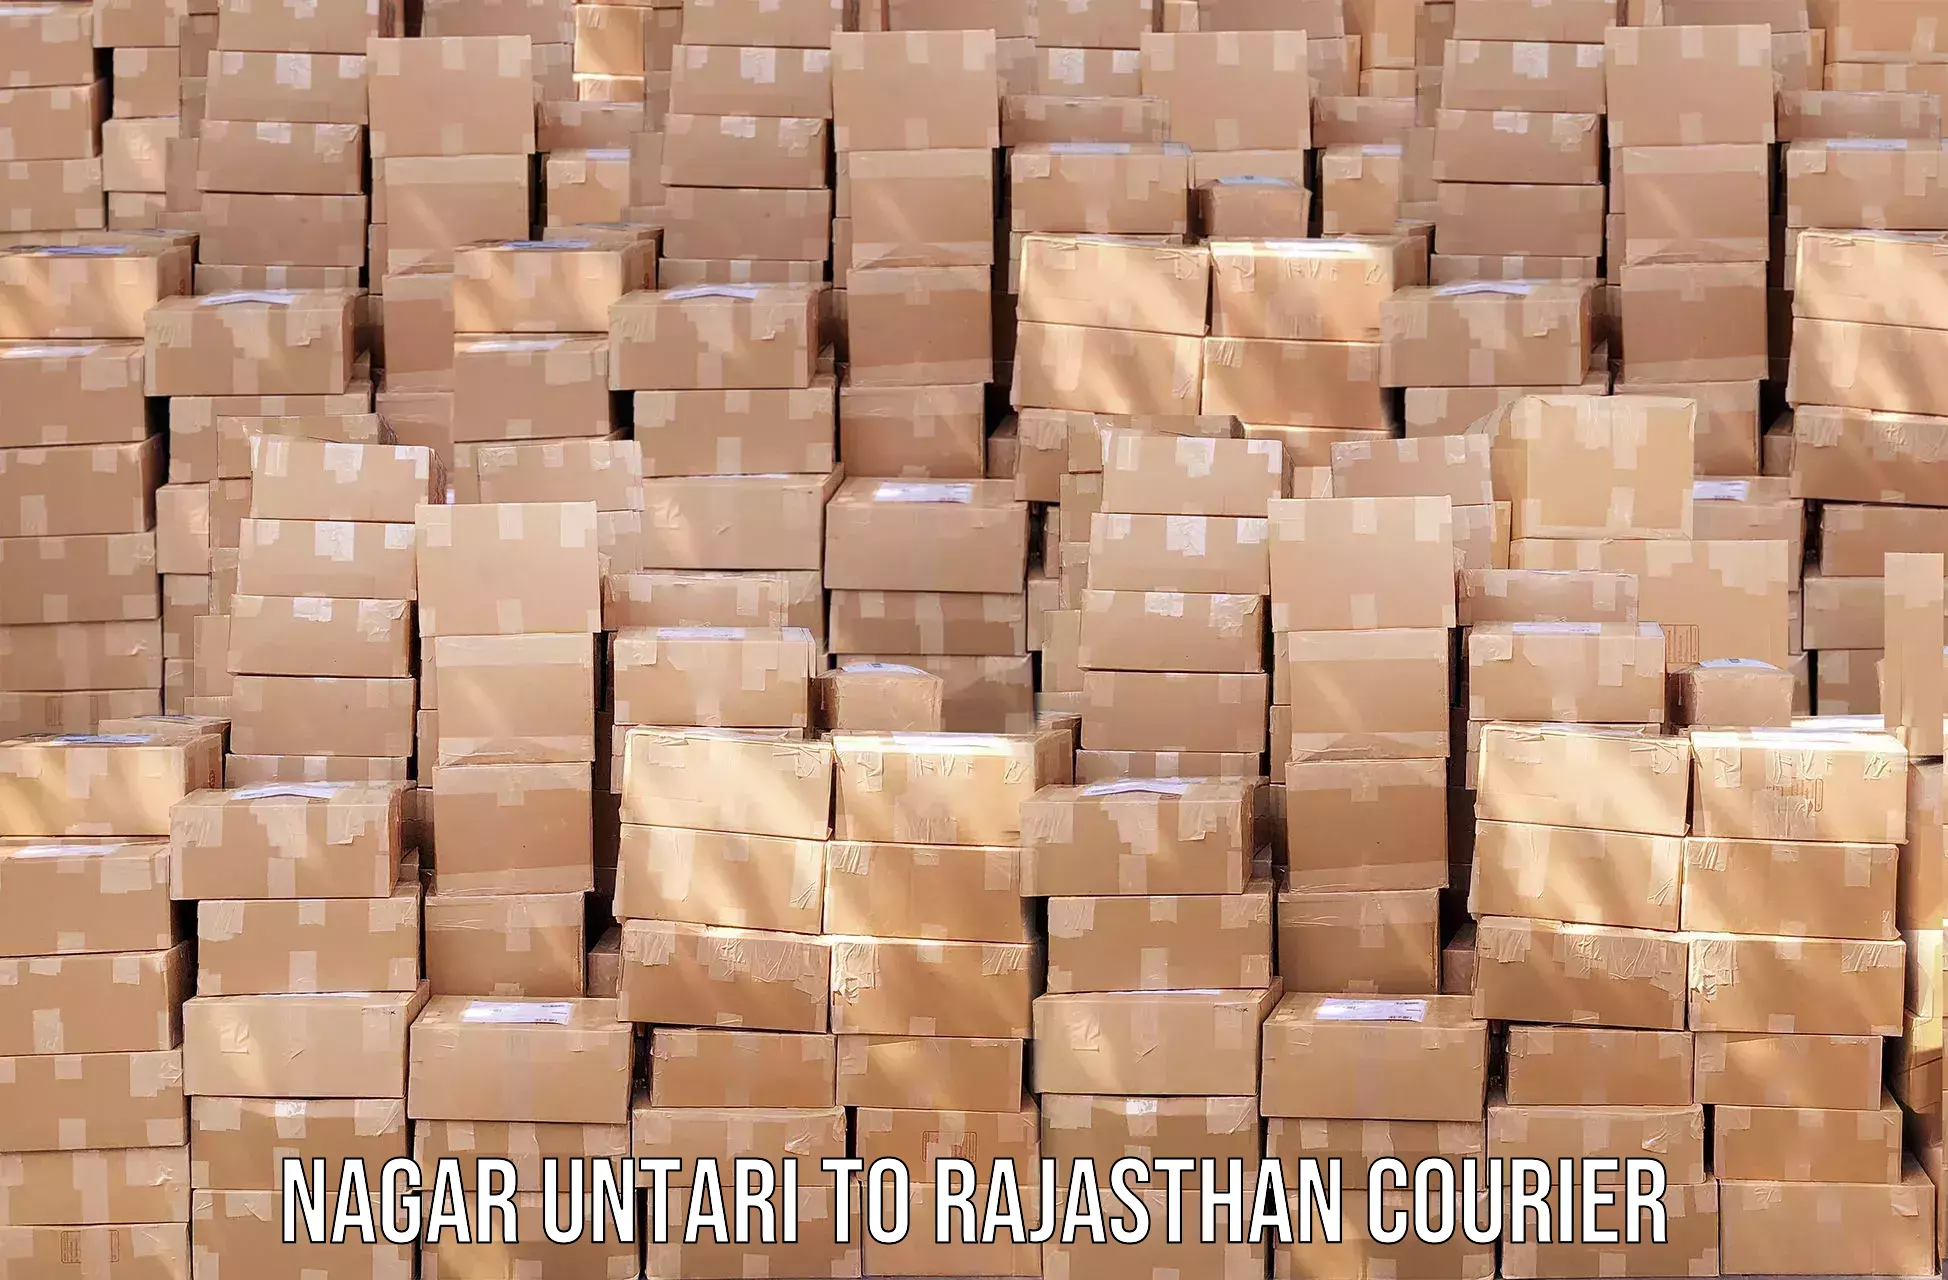 User-friendly delivery service Nagar Untari to Raisingh Nagar